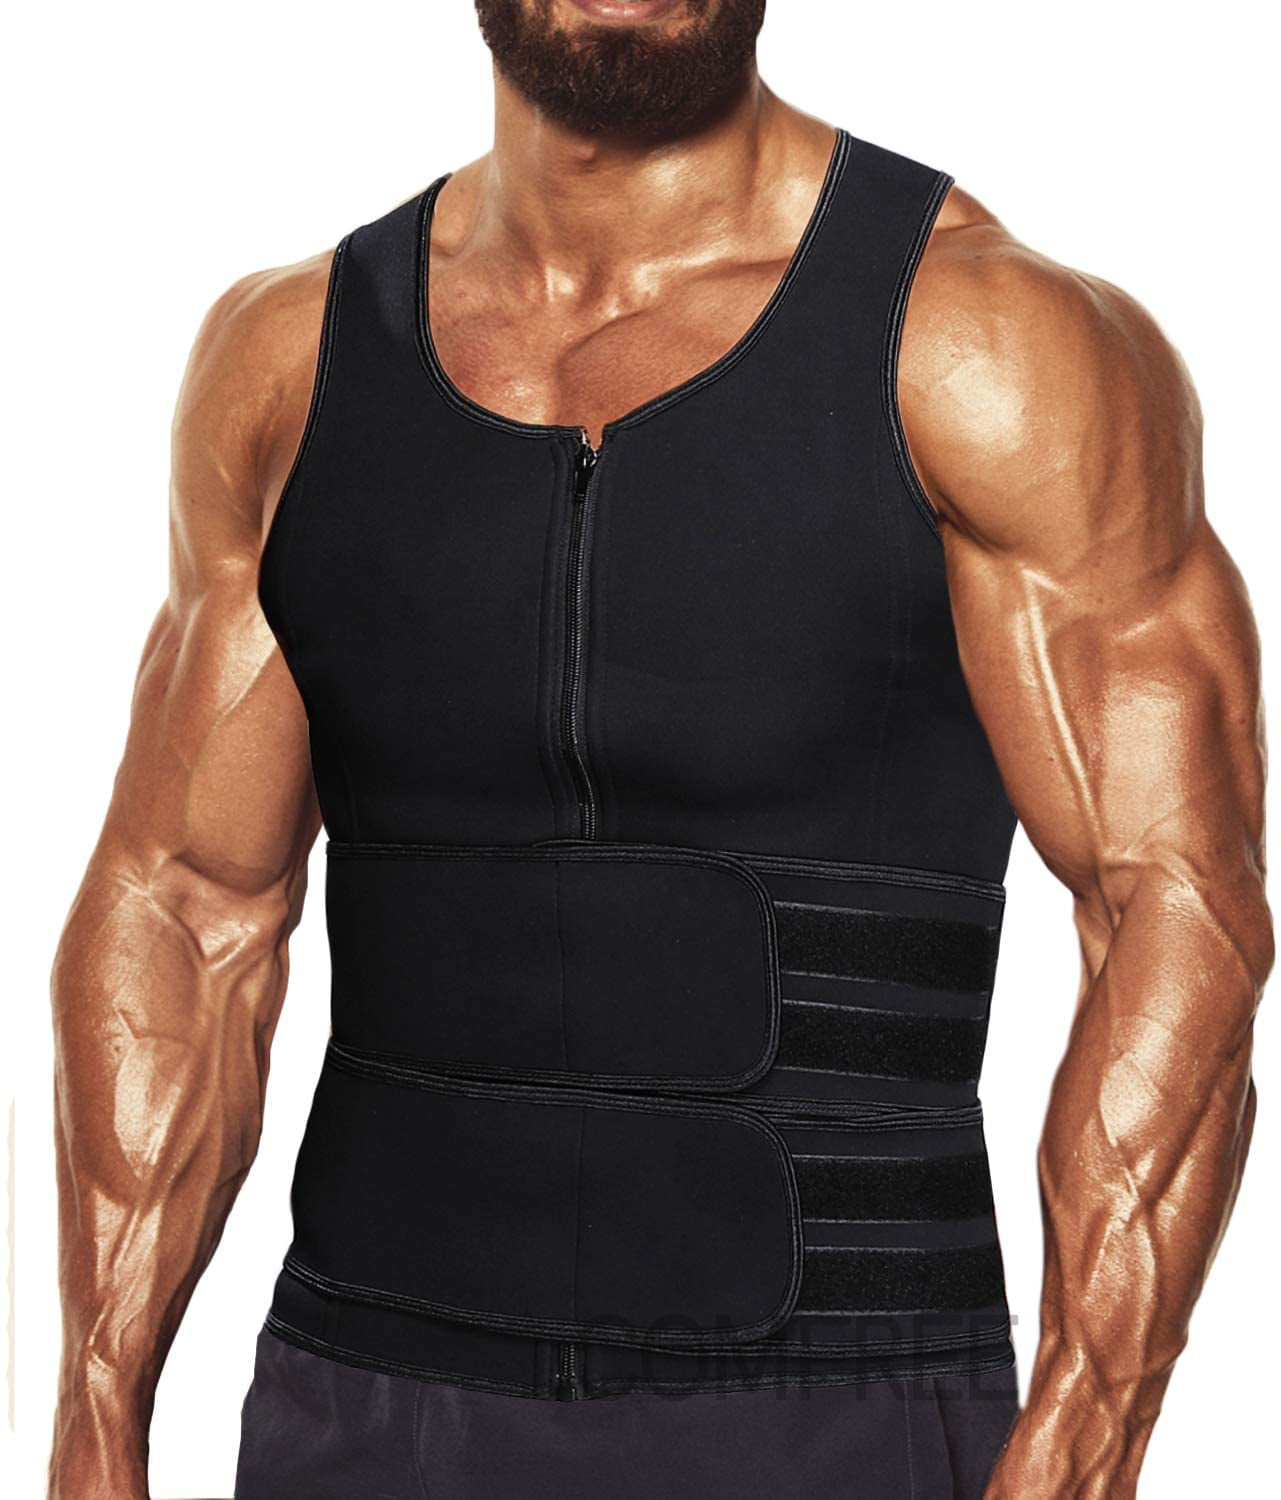 BODYSUNER Sauna Sweat Vest Workout Tank Top Waist Trainer for